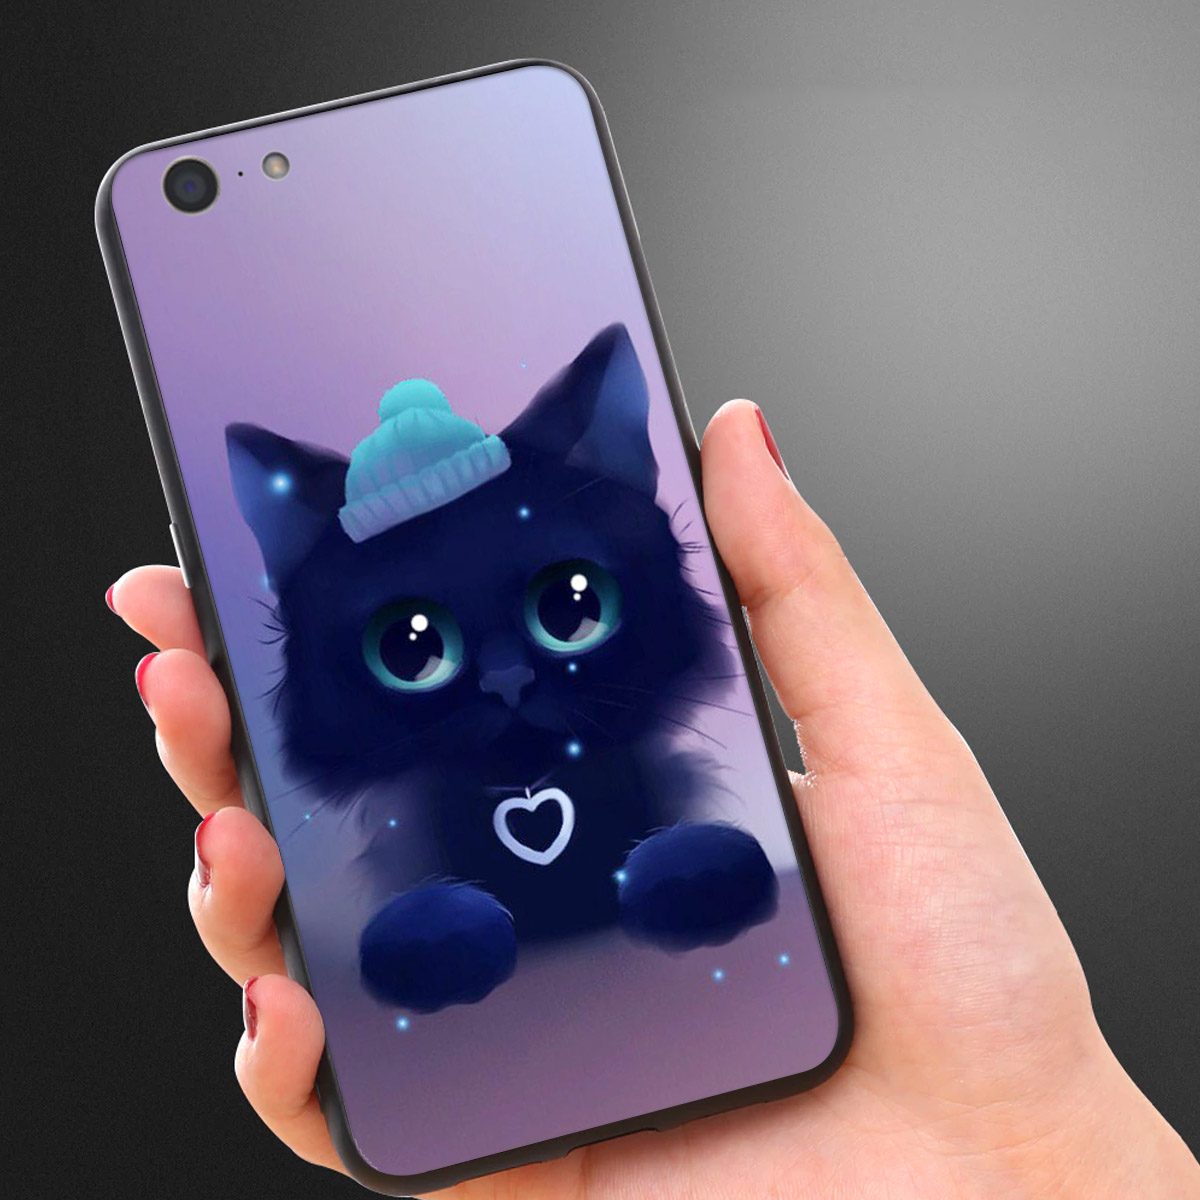 Bảo vệ và tô điểm cho điện thoại Oppo của bạn với ốp lưng siêu dễ thương này. Hình ảnh chi tiết và sắc nét sẽ đem đến cho bạn cảm giác mới lạ và khiến cho bạn thật sự độc đáo. Khám phá ngay những sự lựa chọn tuyệt vời cho điện thoại Oppo của bạn.